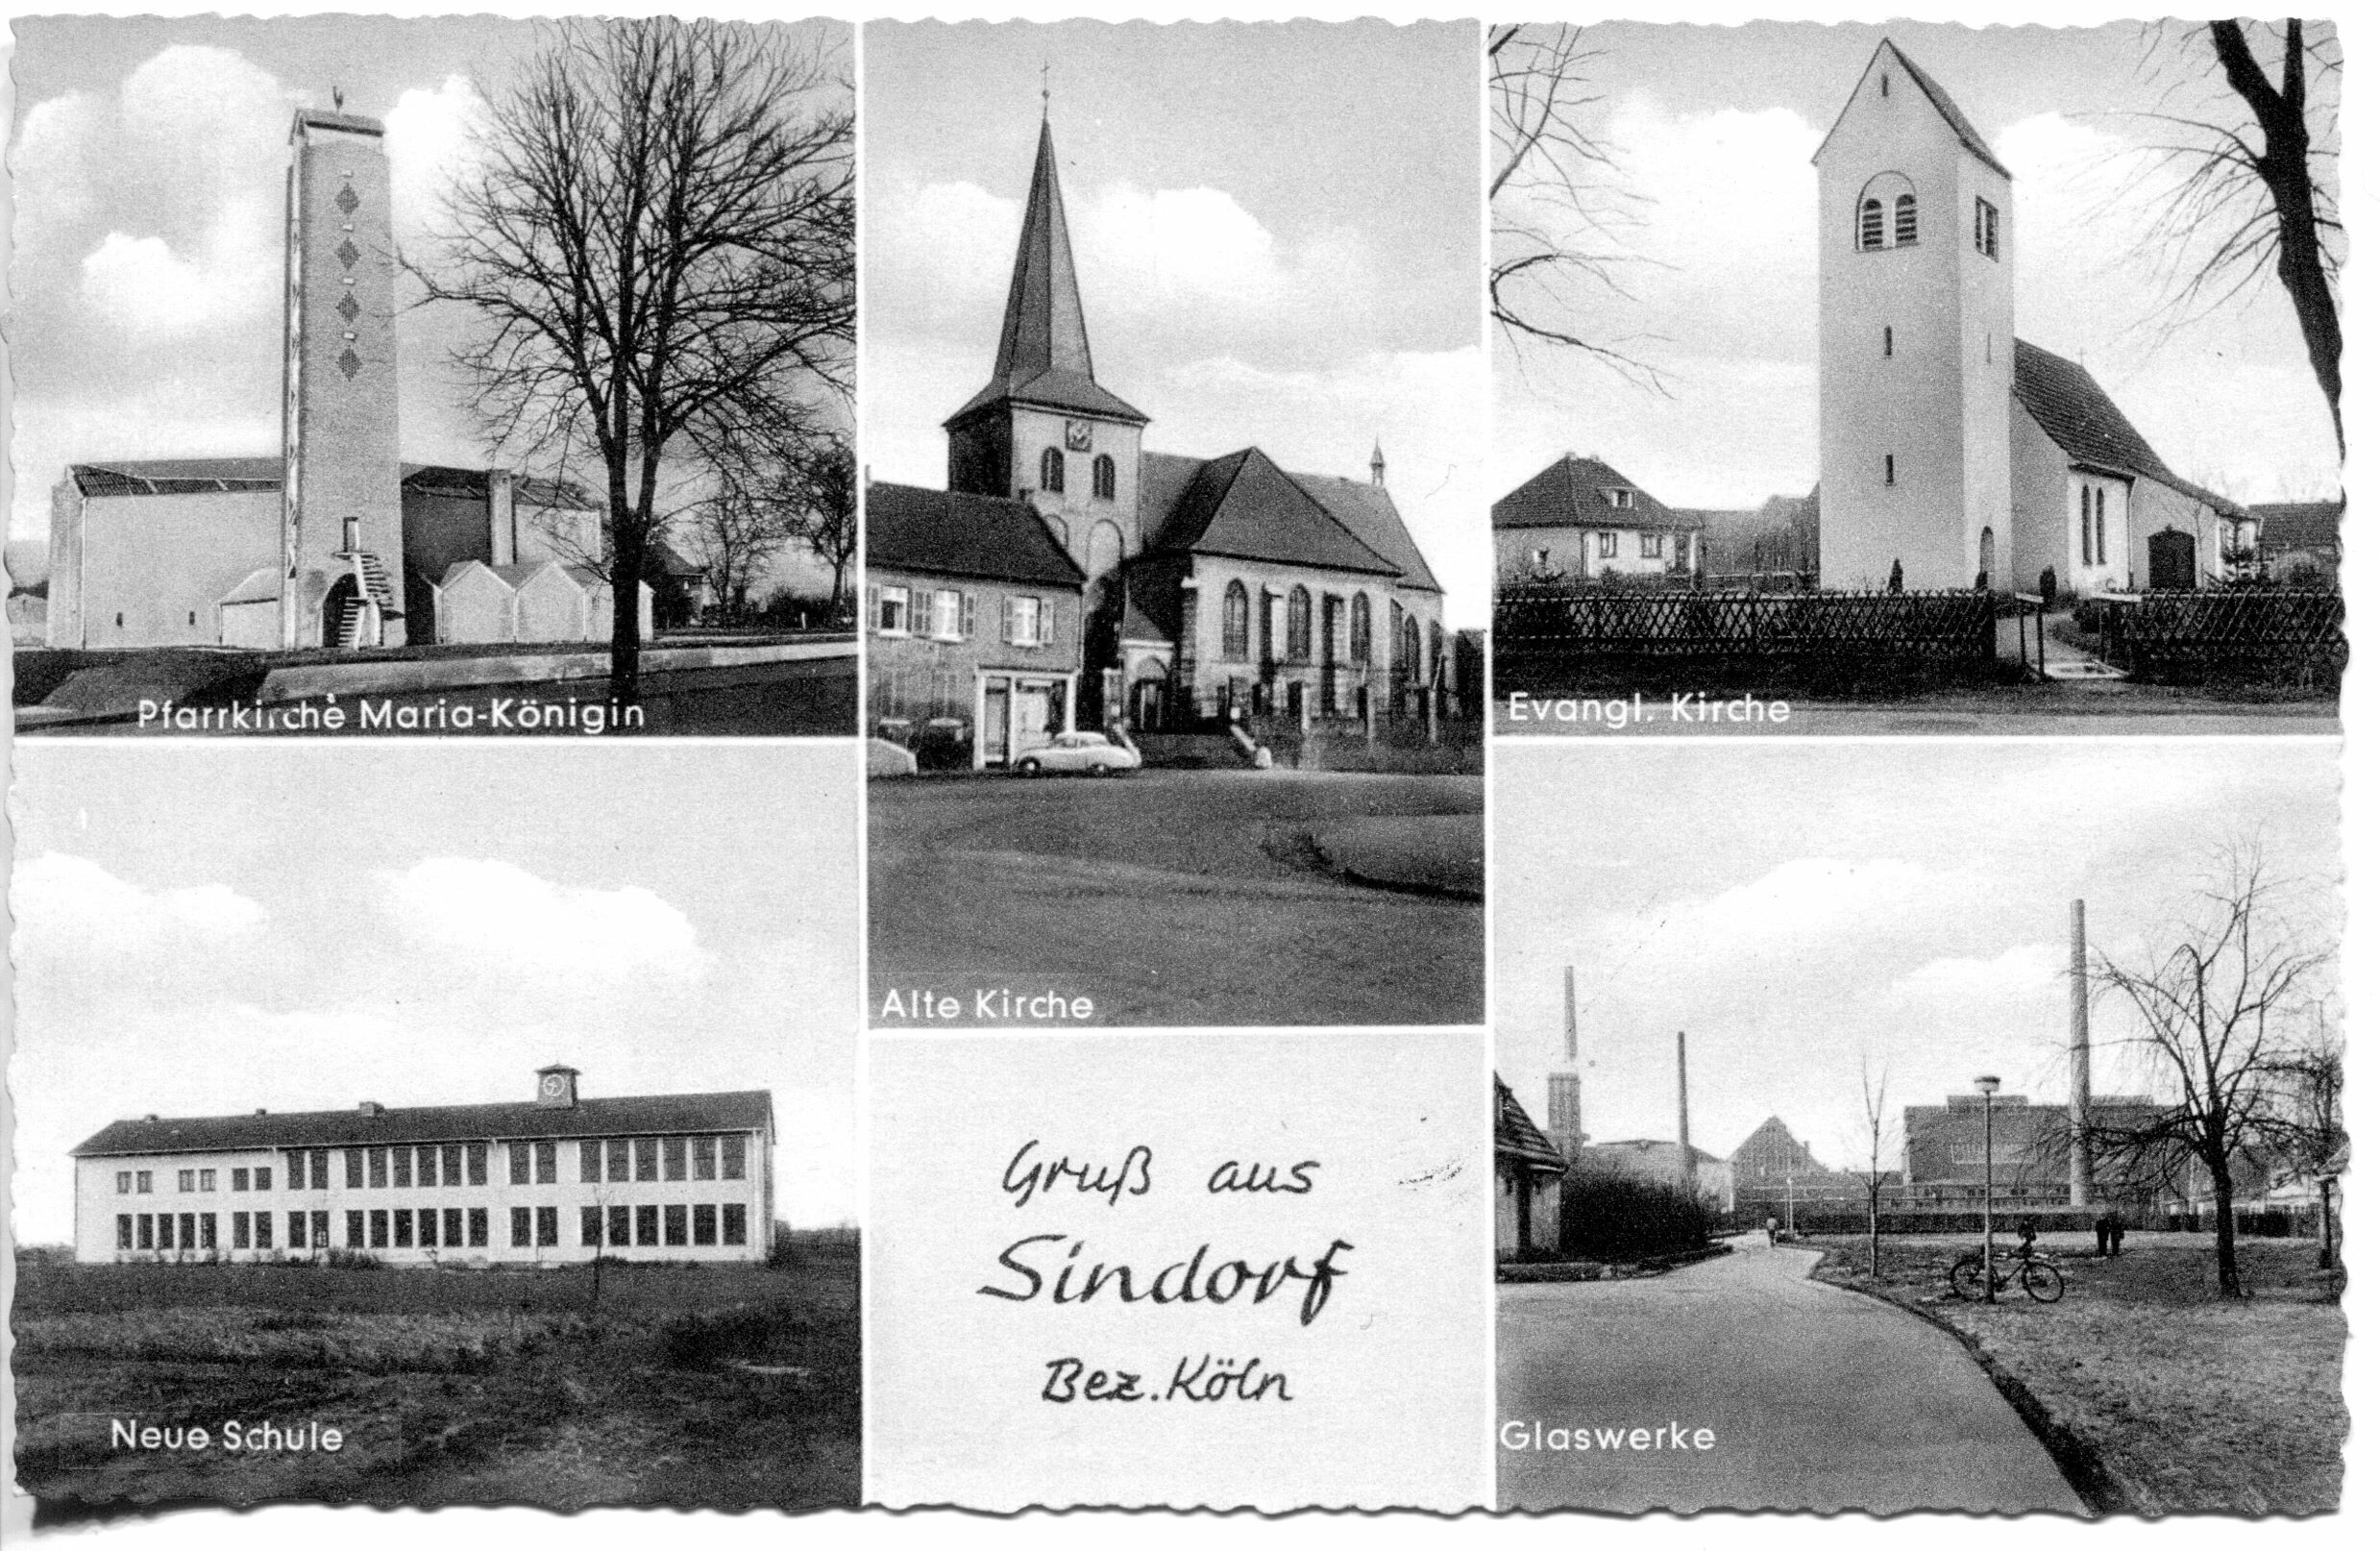 Ansichtskarte von Sindorf | circa 1958 (Günter Kaulisch CC BY-NC-SA)